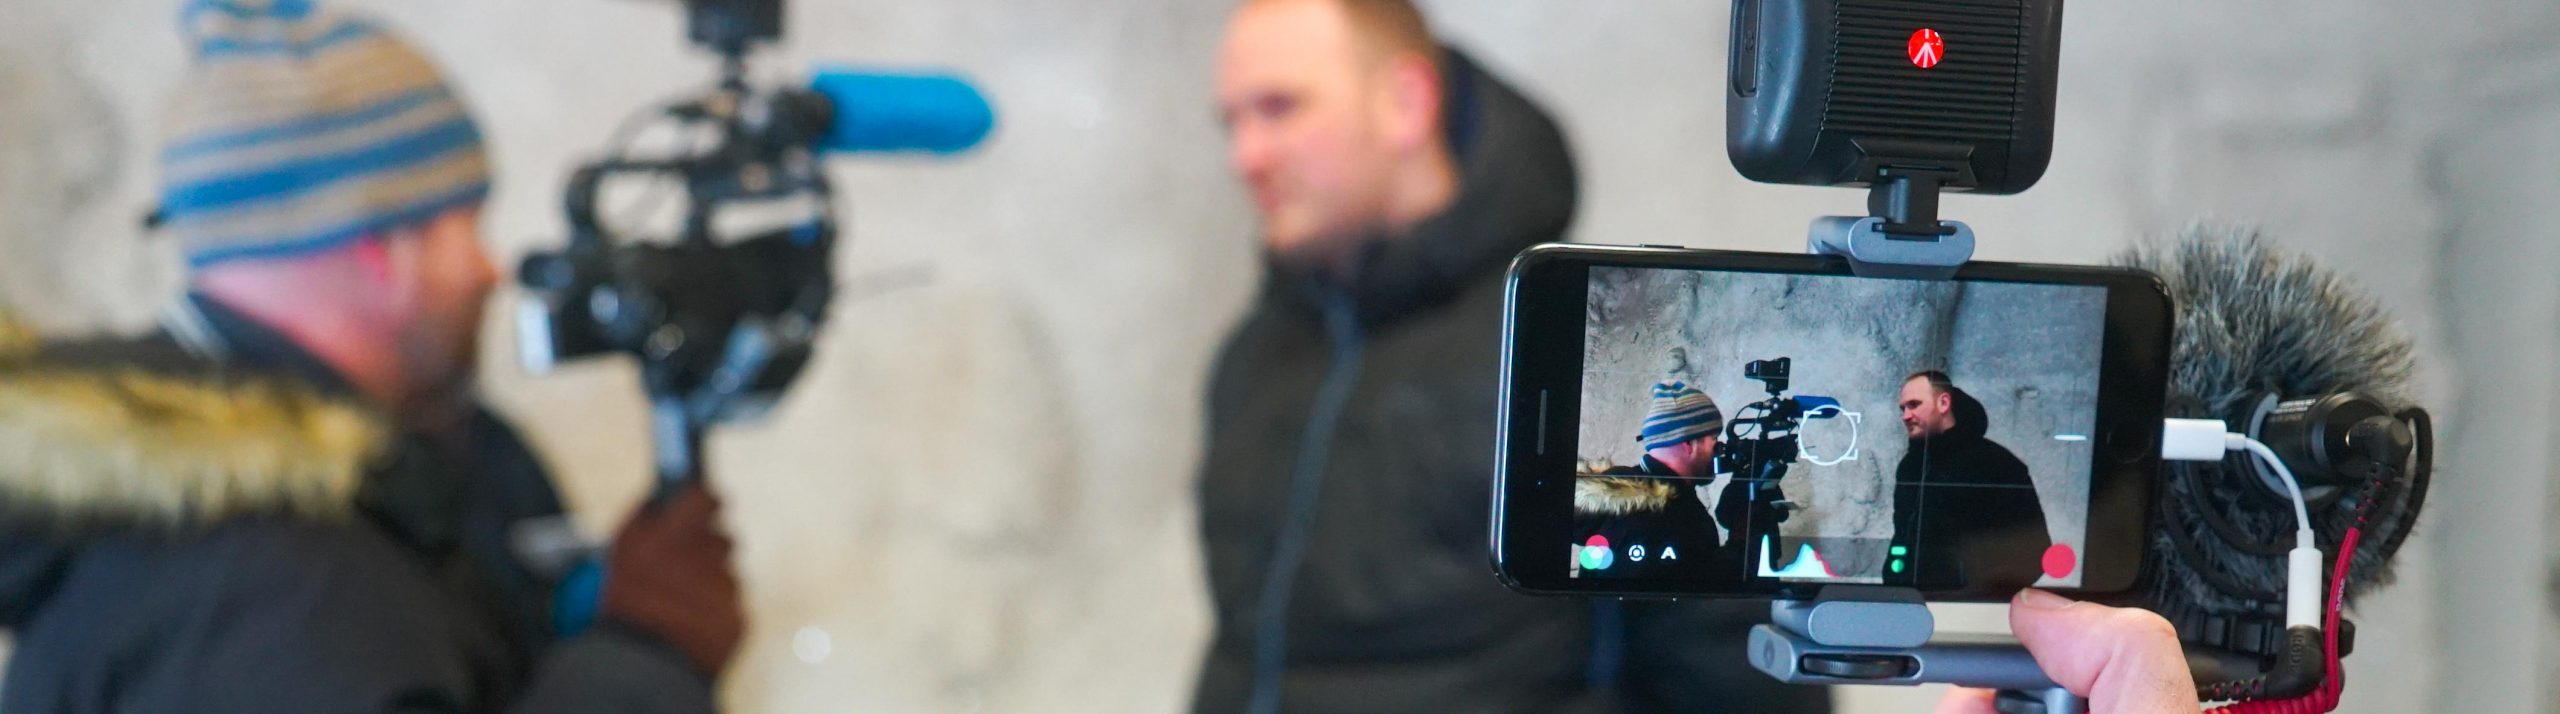 En mobilkamera med mikrofon filmar en man som intervjuas av en annan man med kamera